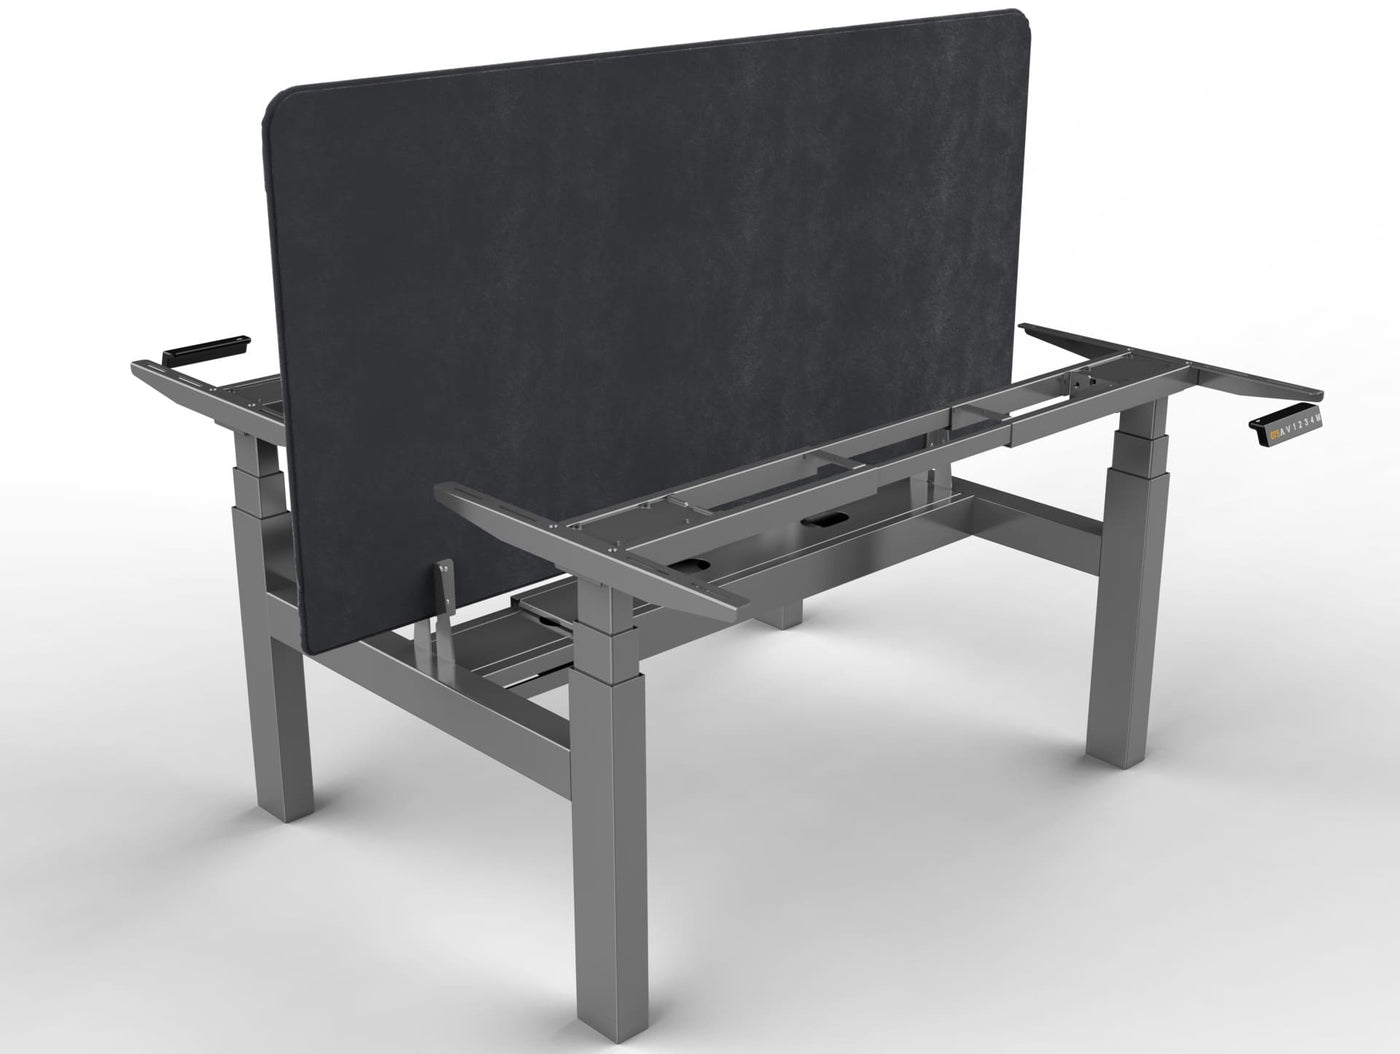 Piètement assis debout motorisé DuoDesk : un bureau collaboratif ergonomique  UP AND DESK Aluminium Anthracite 160 x 80 